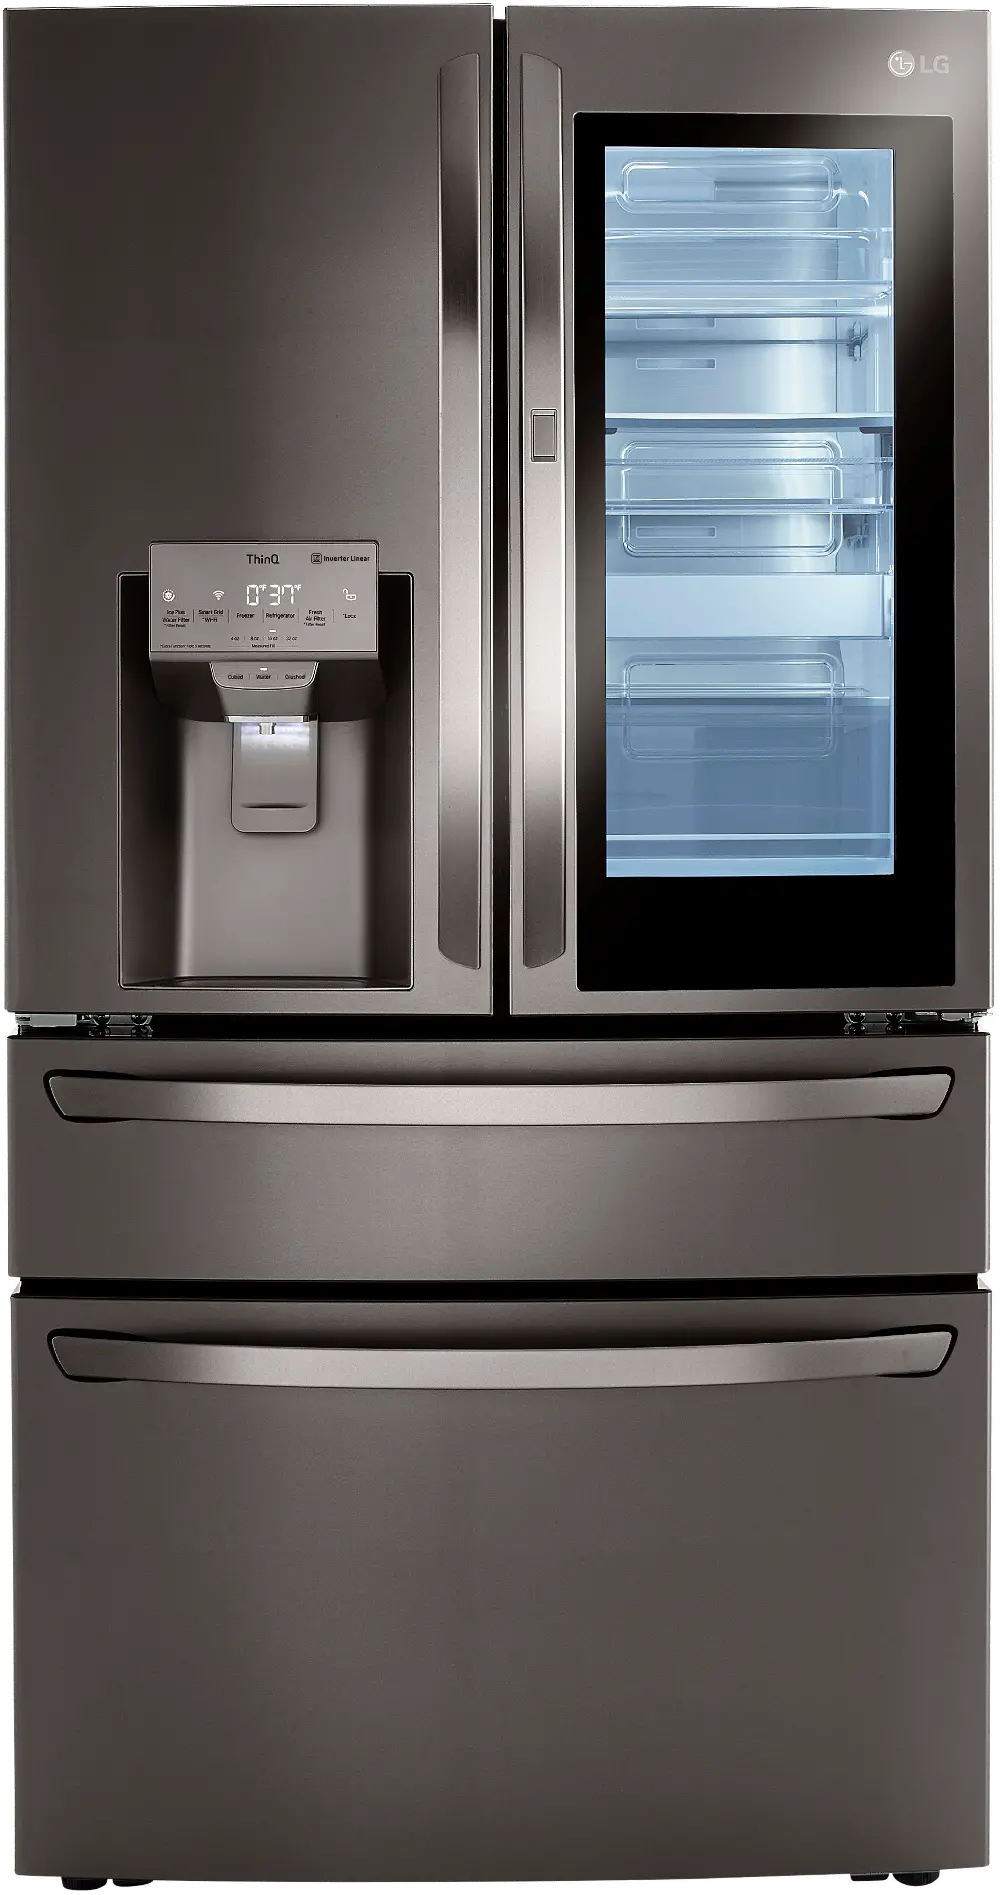 LRMVC2306D LG 22.5 cu ft French Door in Door Refrigerator - Counter Depth Black Stainless Steel-1